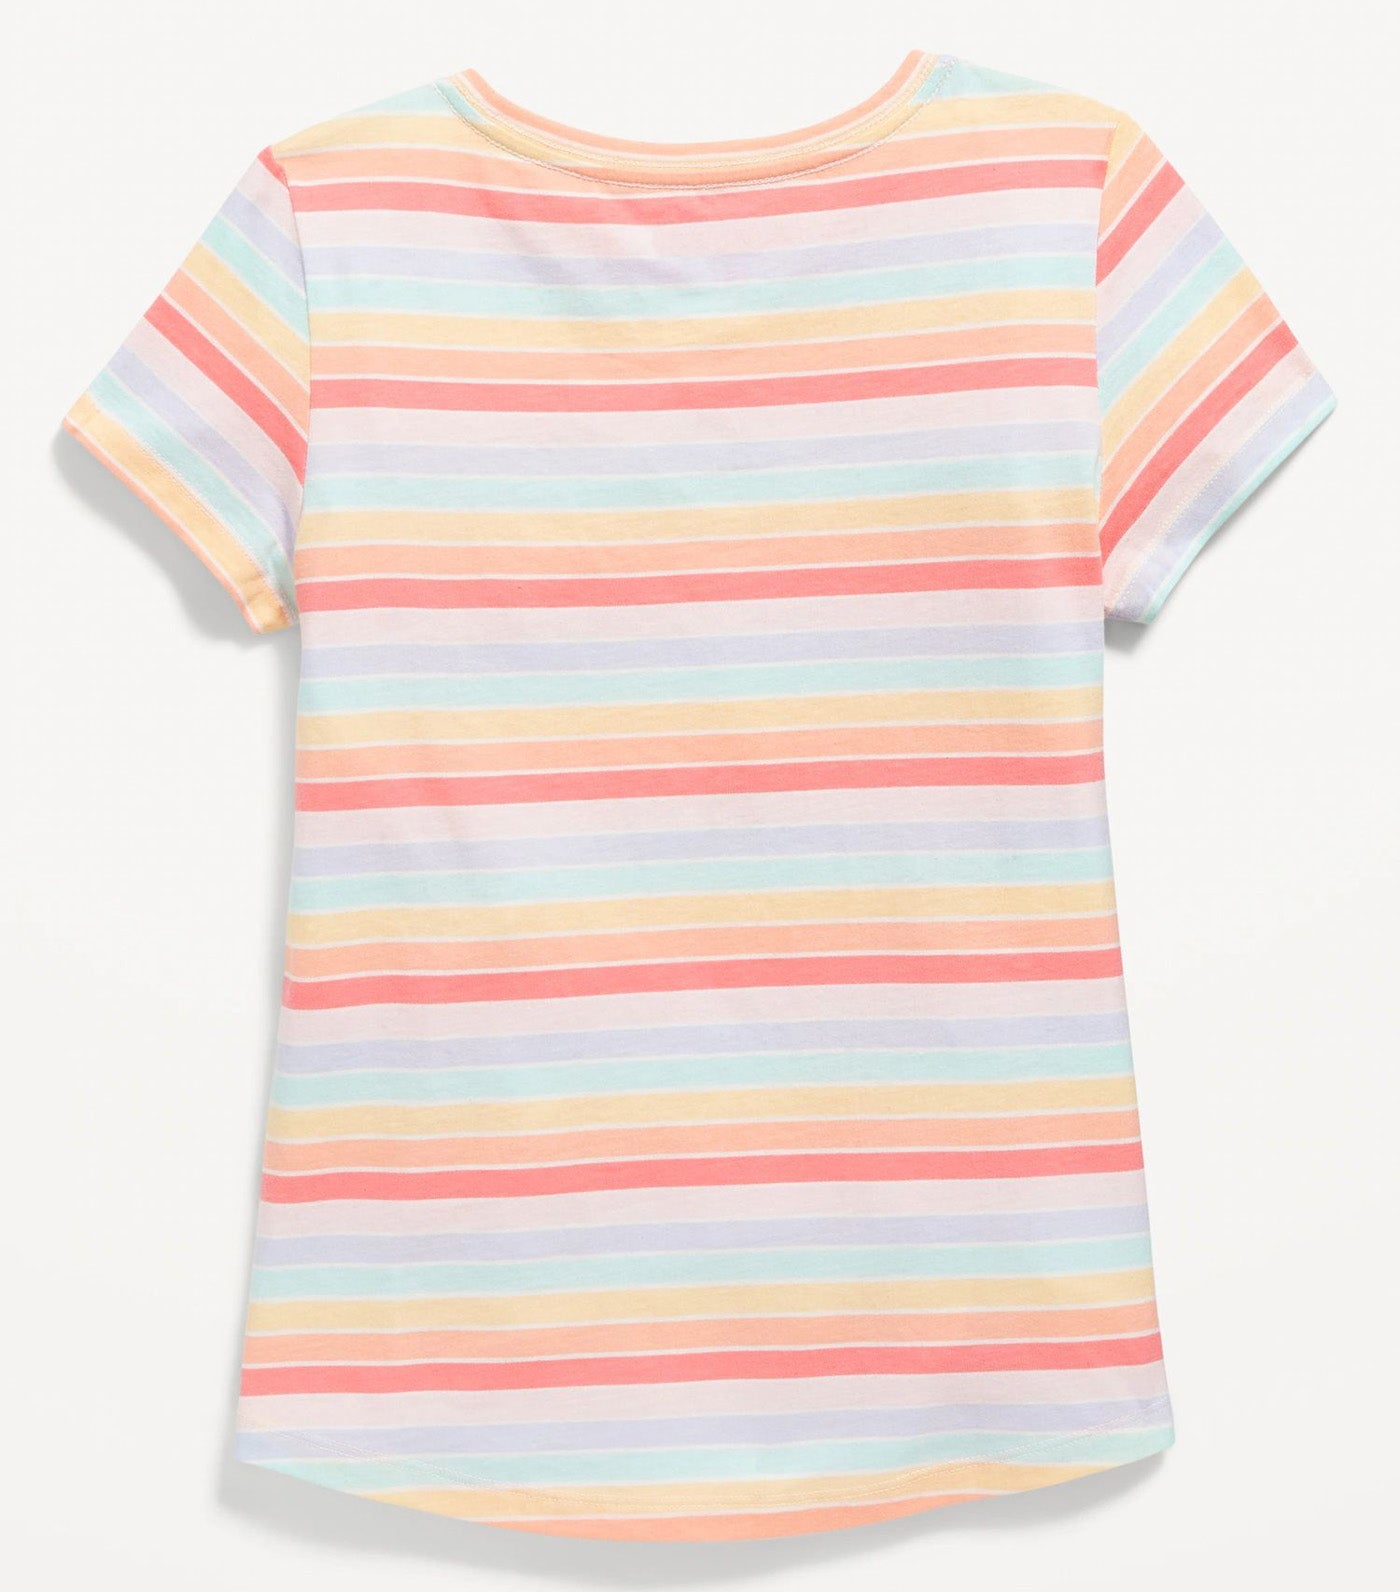 Softest Short-Sleeve Printed T-Shirt for Girls - Multi Stripe